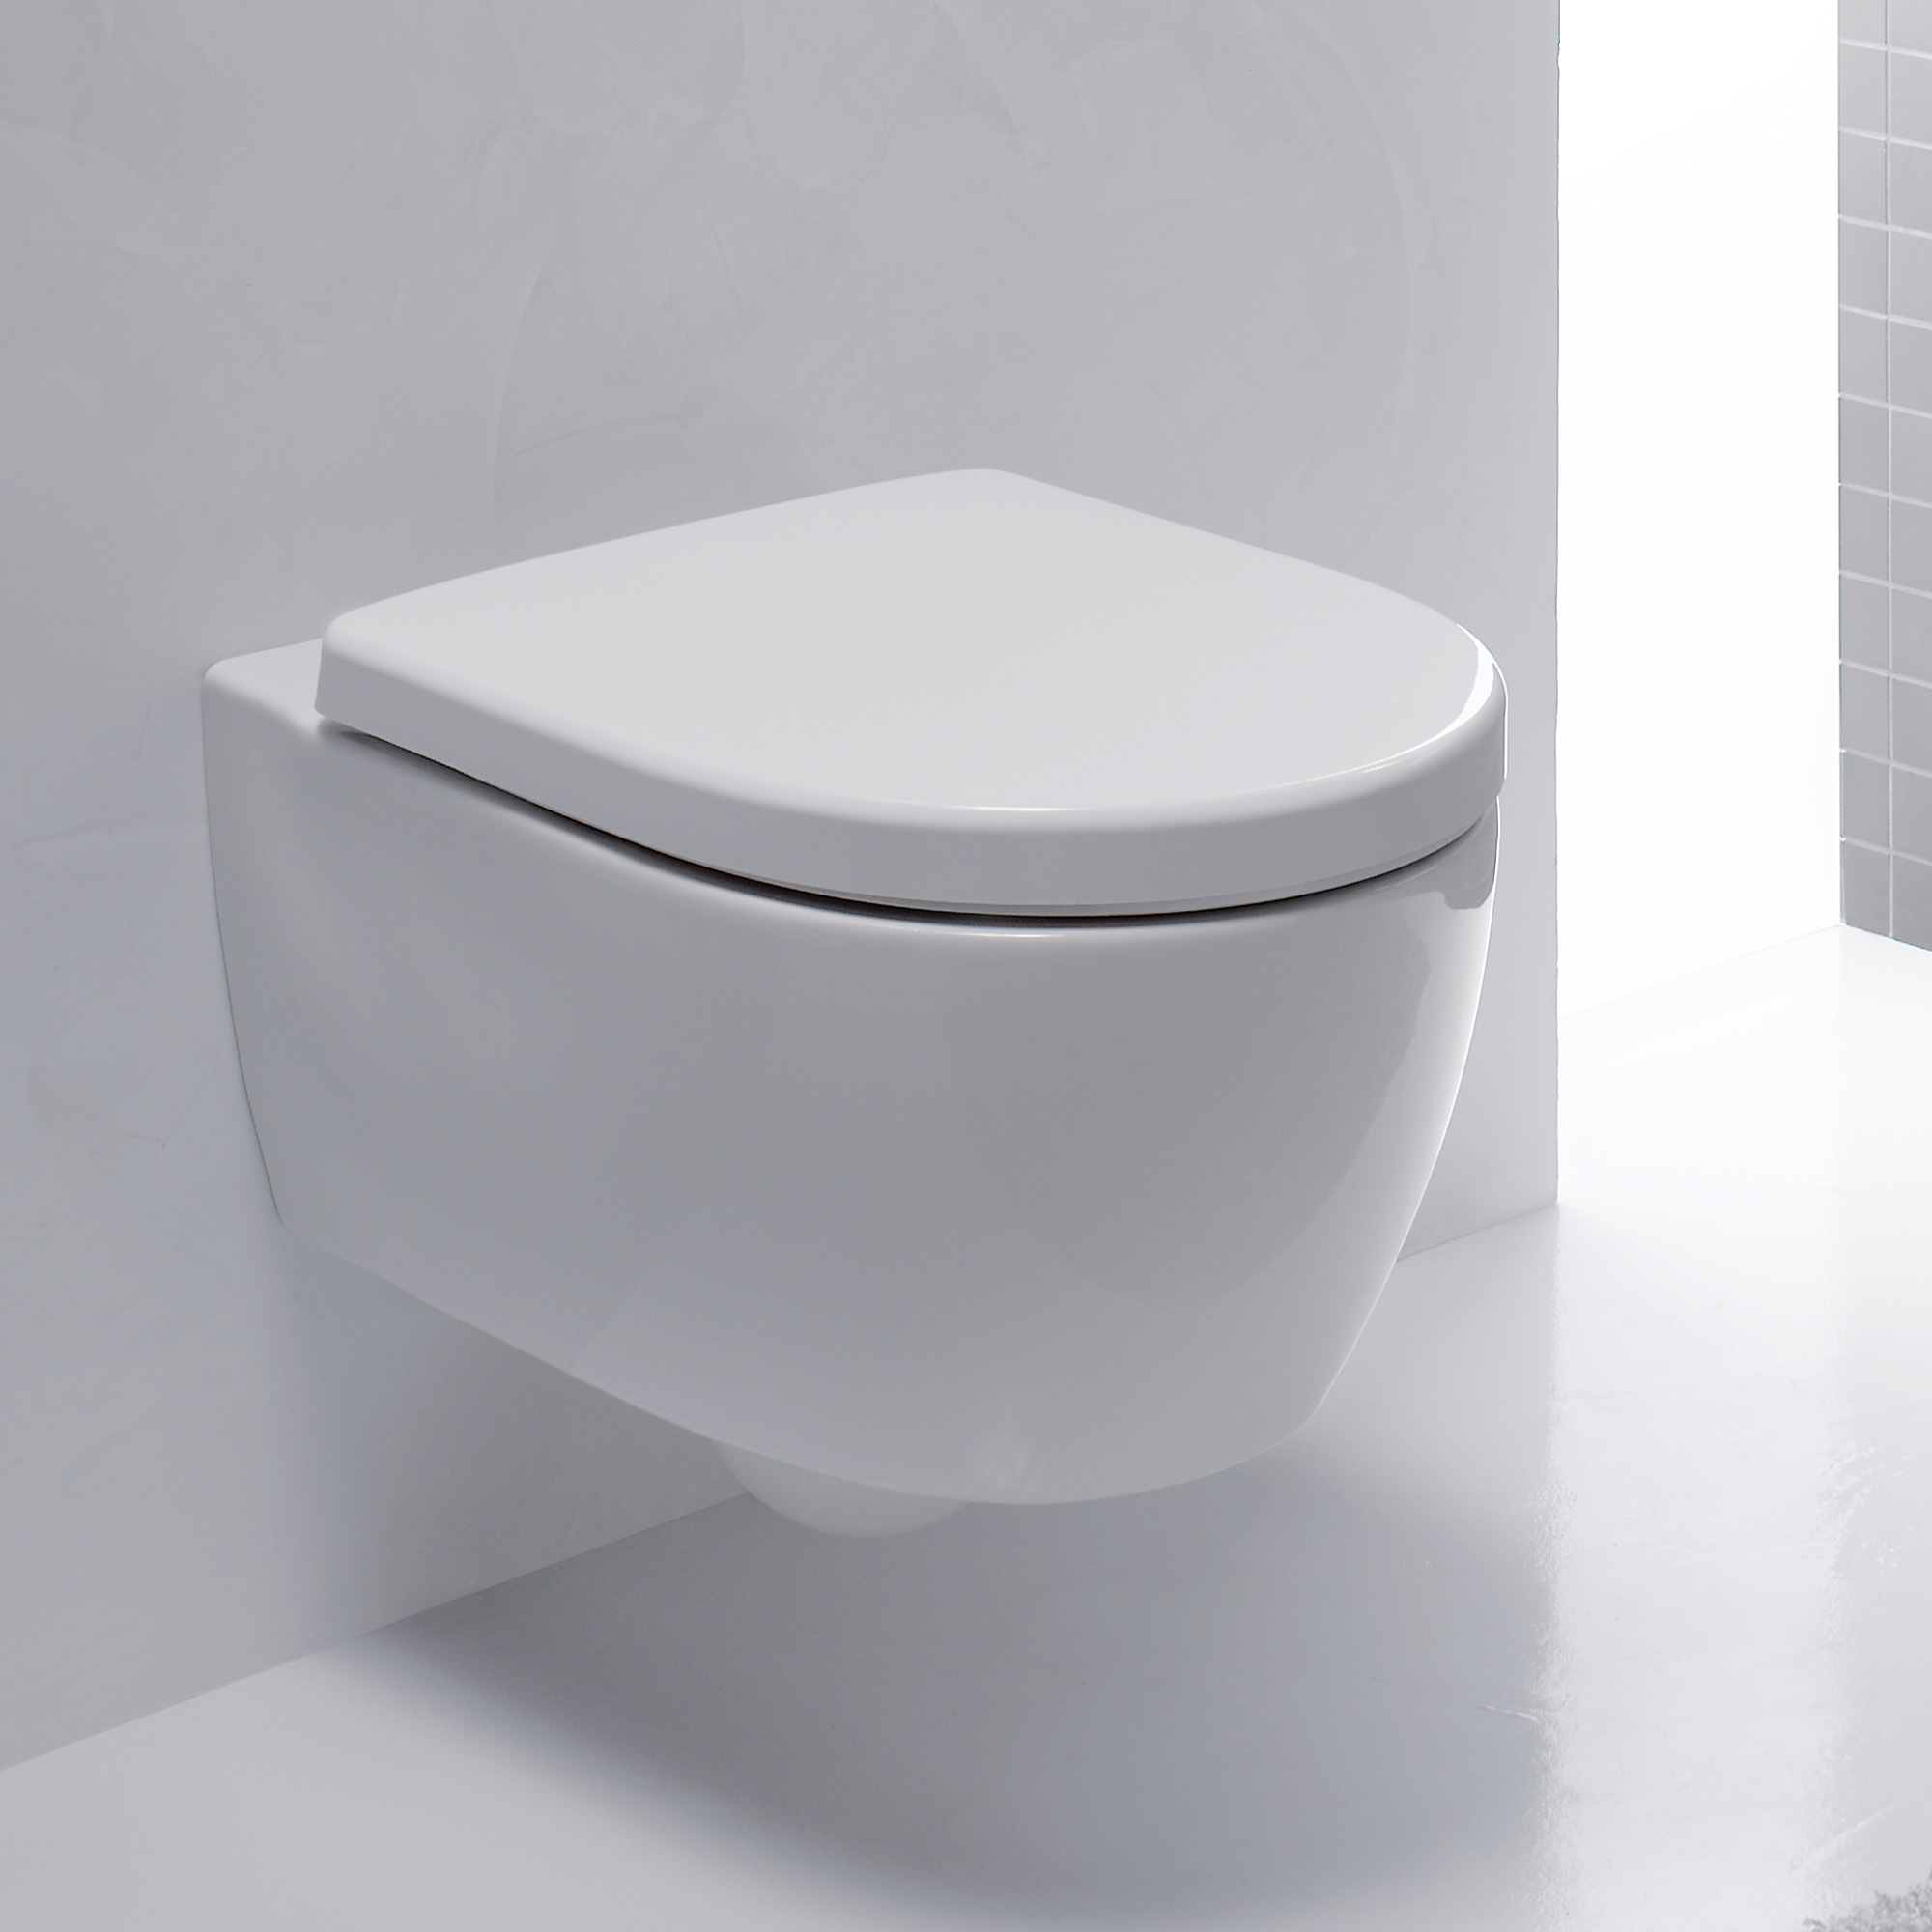 Wand Hänge Urinal Urinalbecken Pissoir WC Lotus Beschichtung Sensor Schalter 